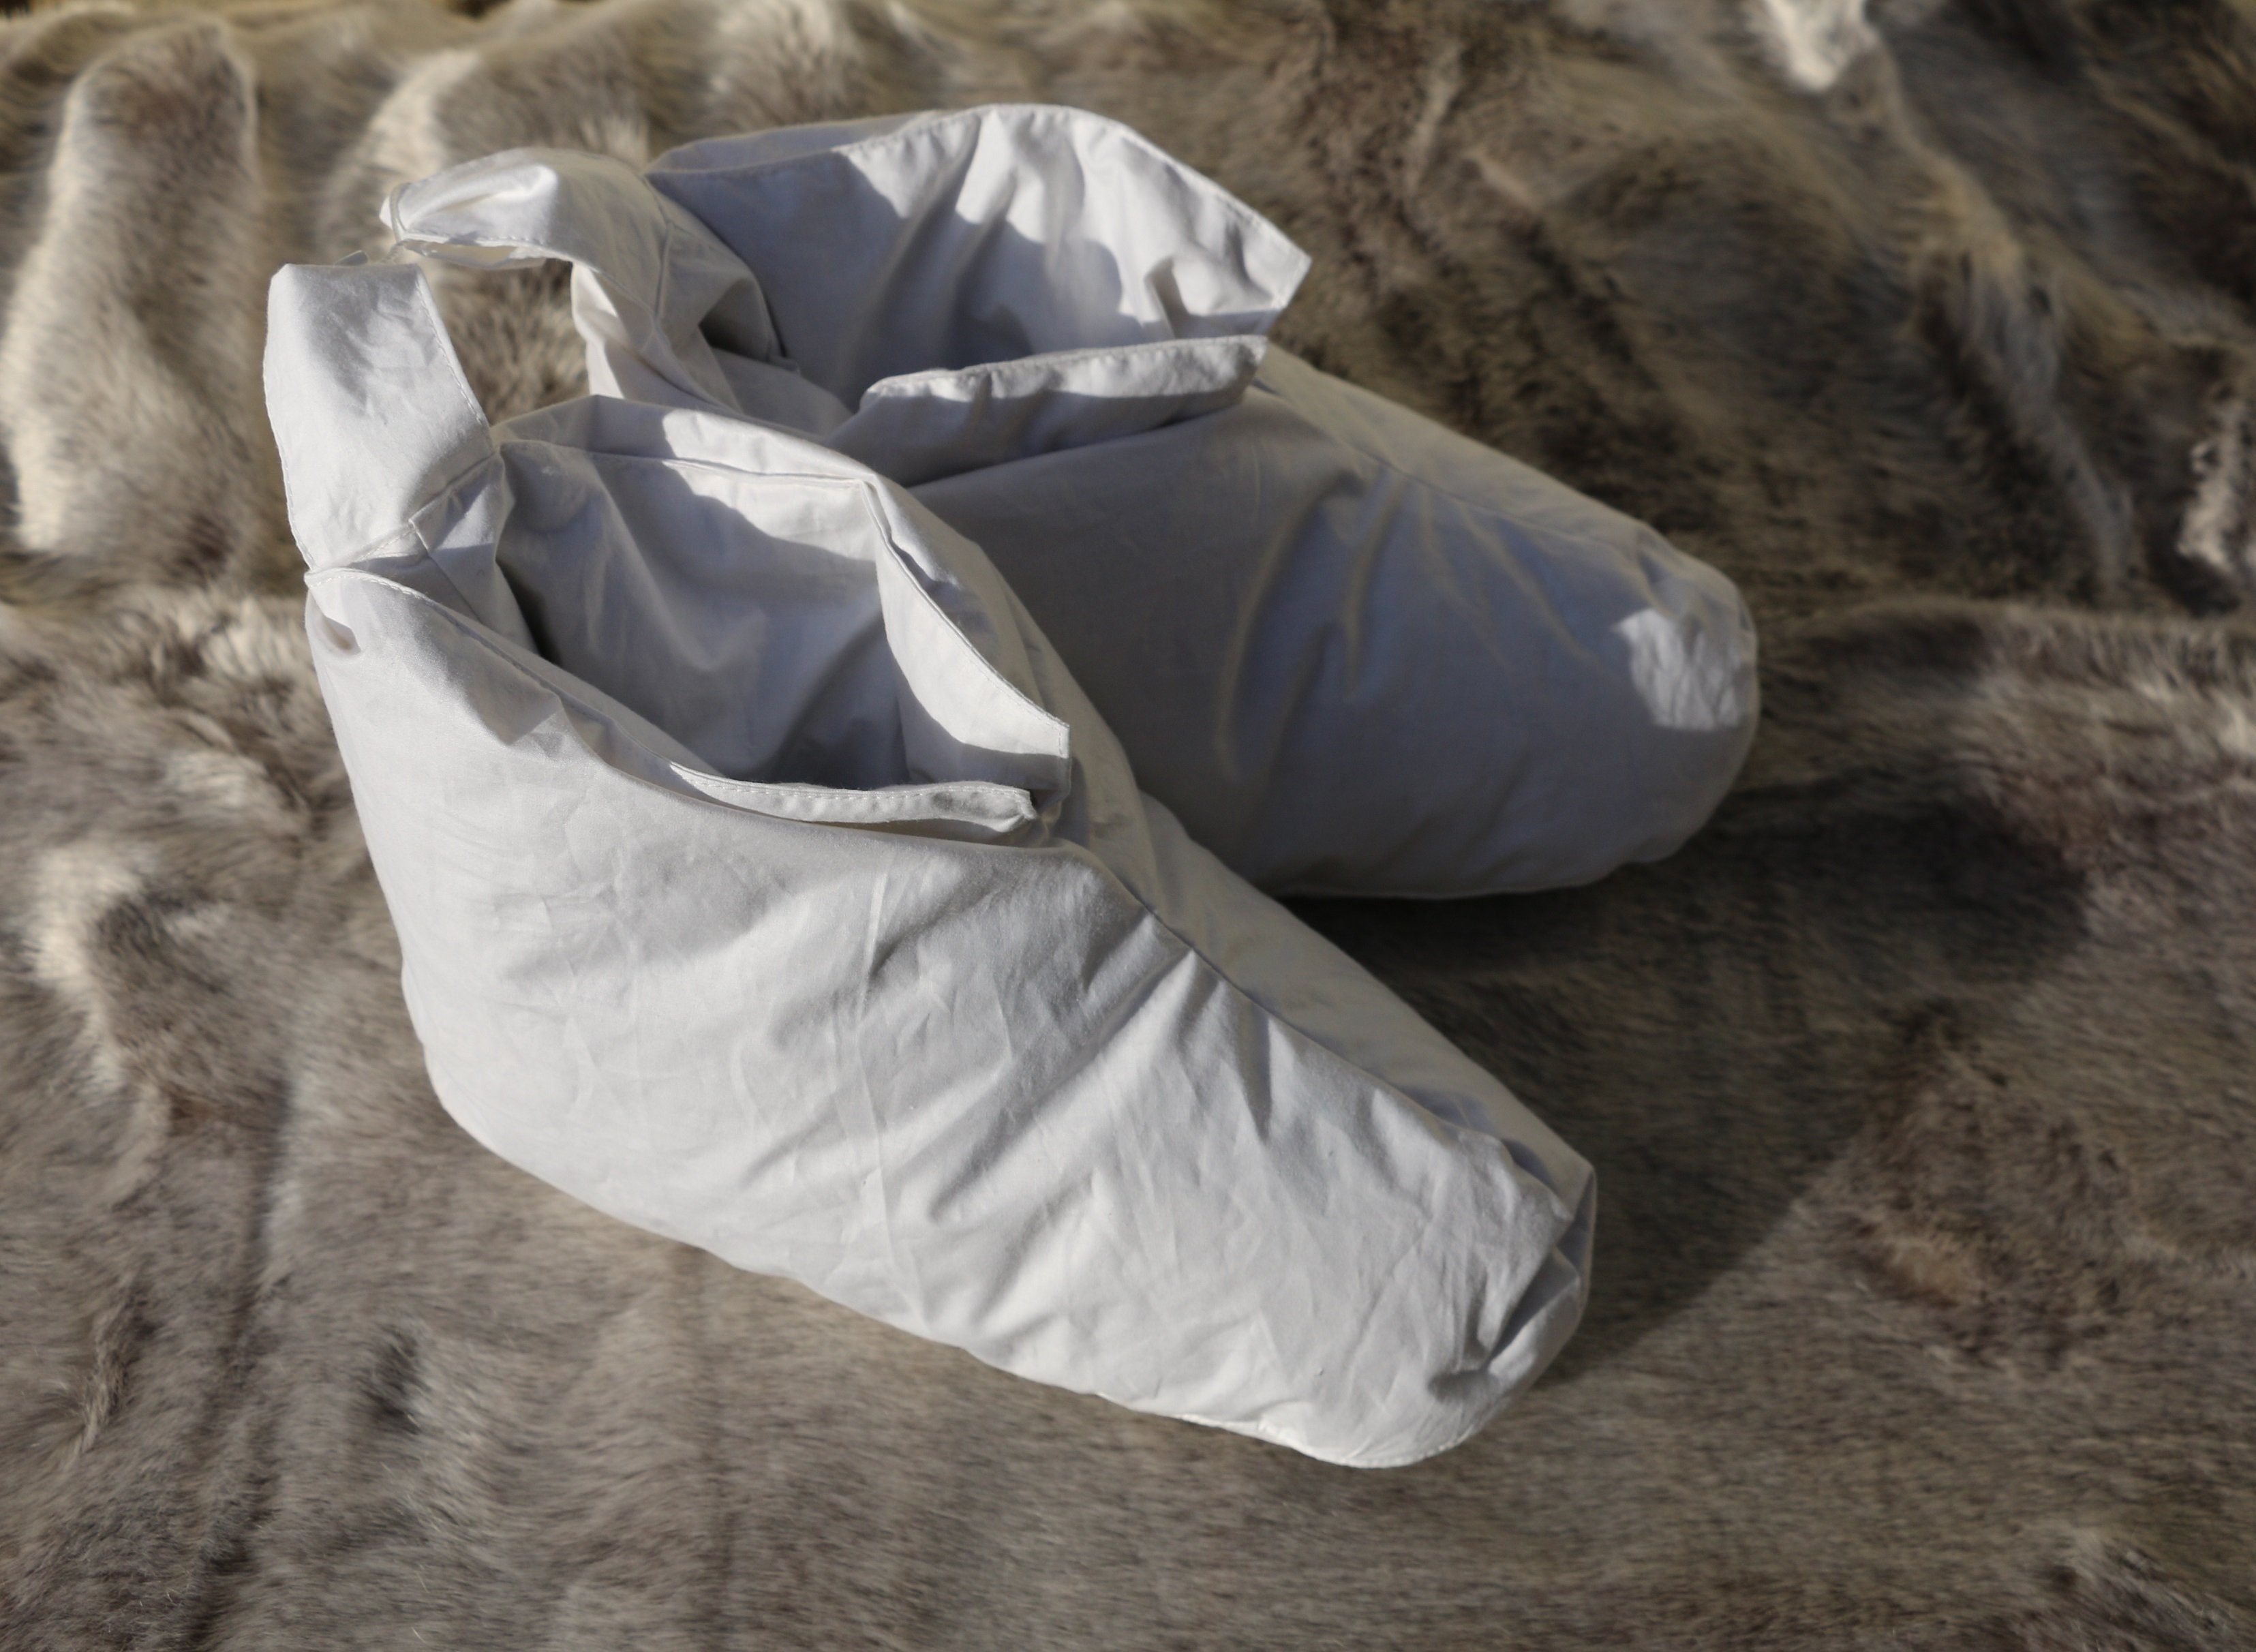 Kuschelwarme 1, Gr. Betten Landdaunen Hofmann, Füllung: Daunenschuhe weiß Bettschuhe Kopfkissen Hausschuhe